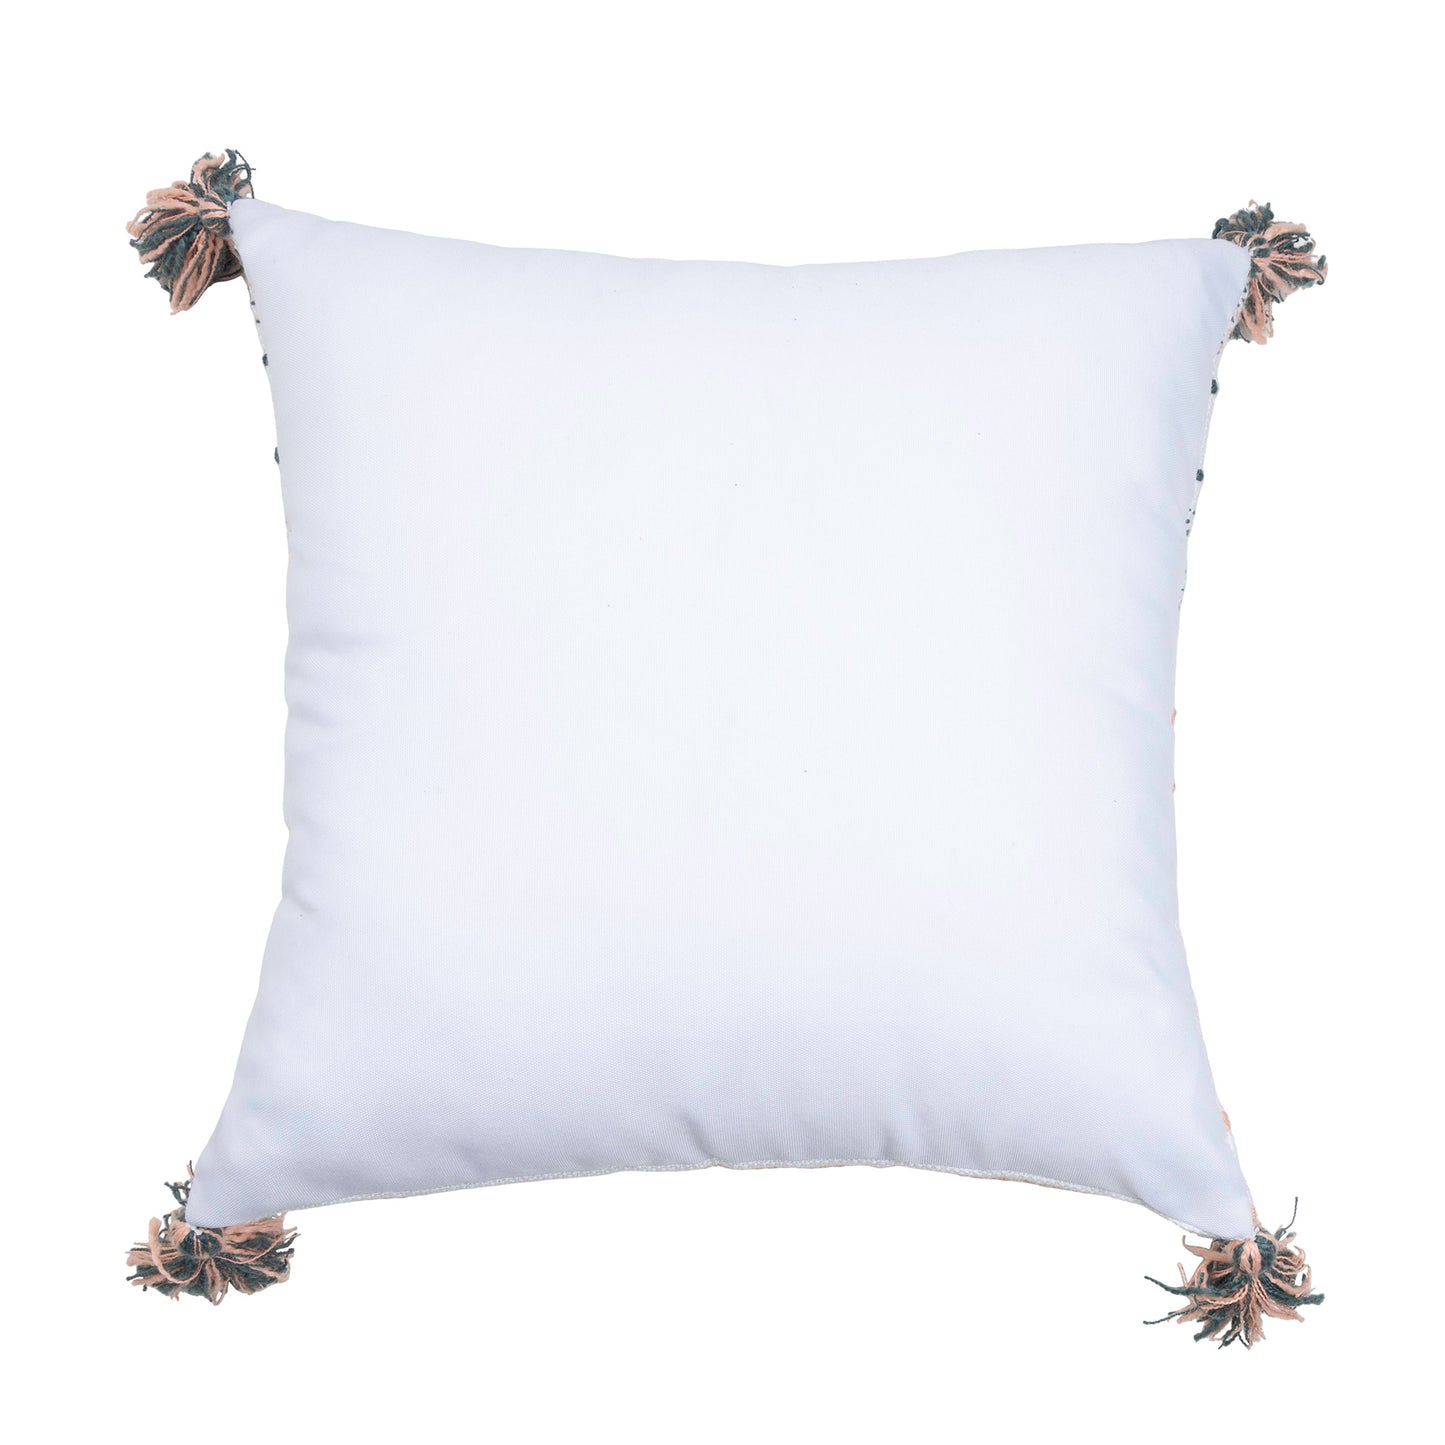 Tylanne 18X18" Handwoven Striped Indoor/Outdoor Throw Pillow